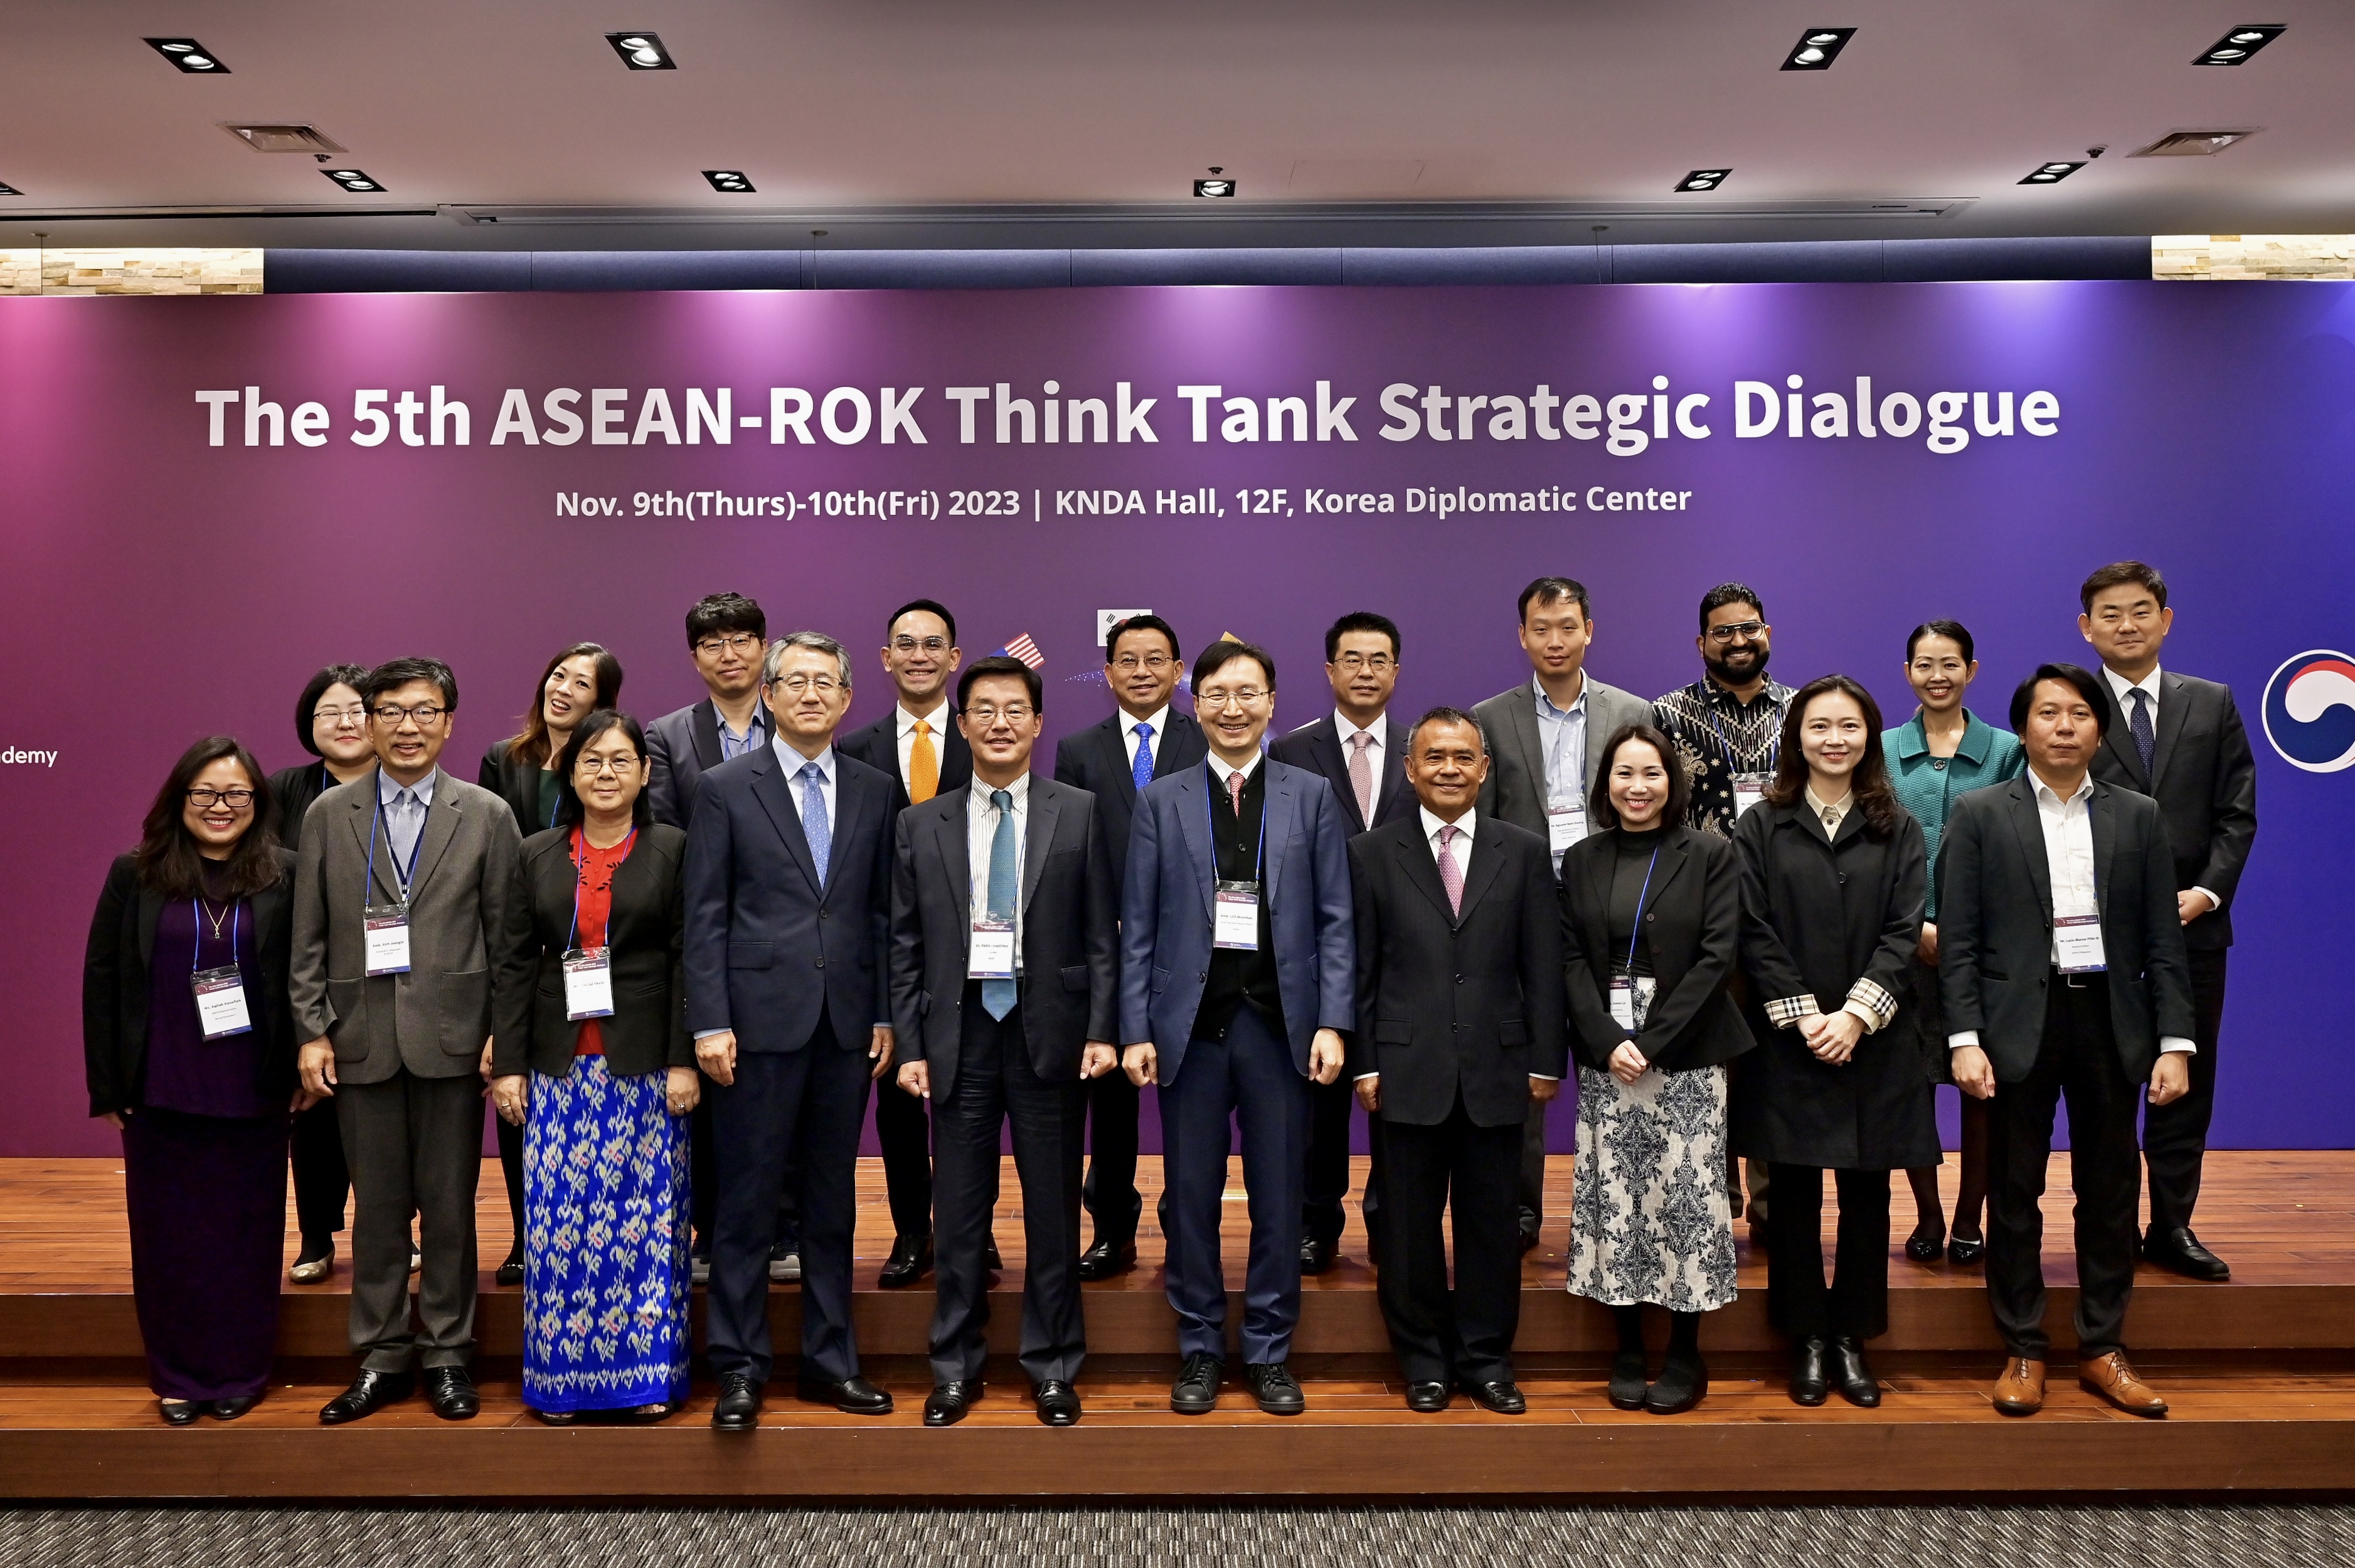 The 5th ASEAN-ROK Think Tank Strategic Dialogue